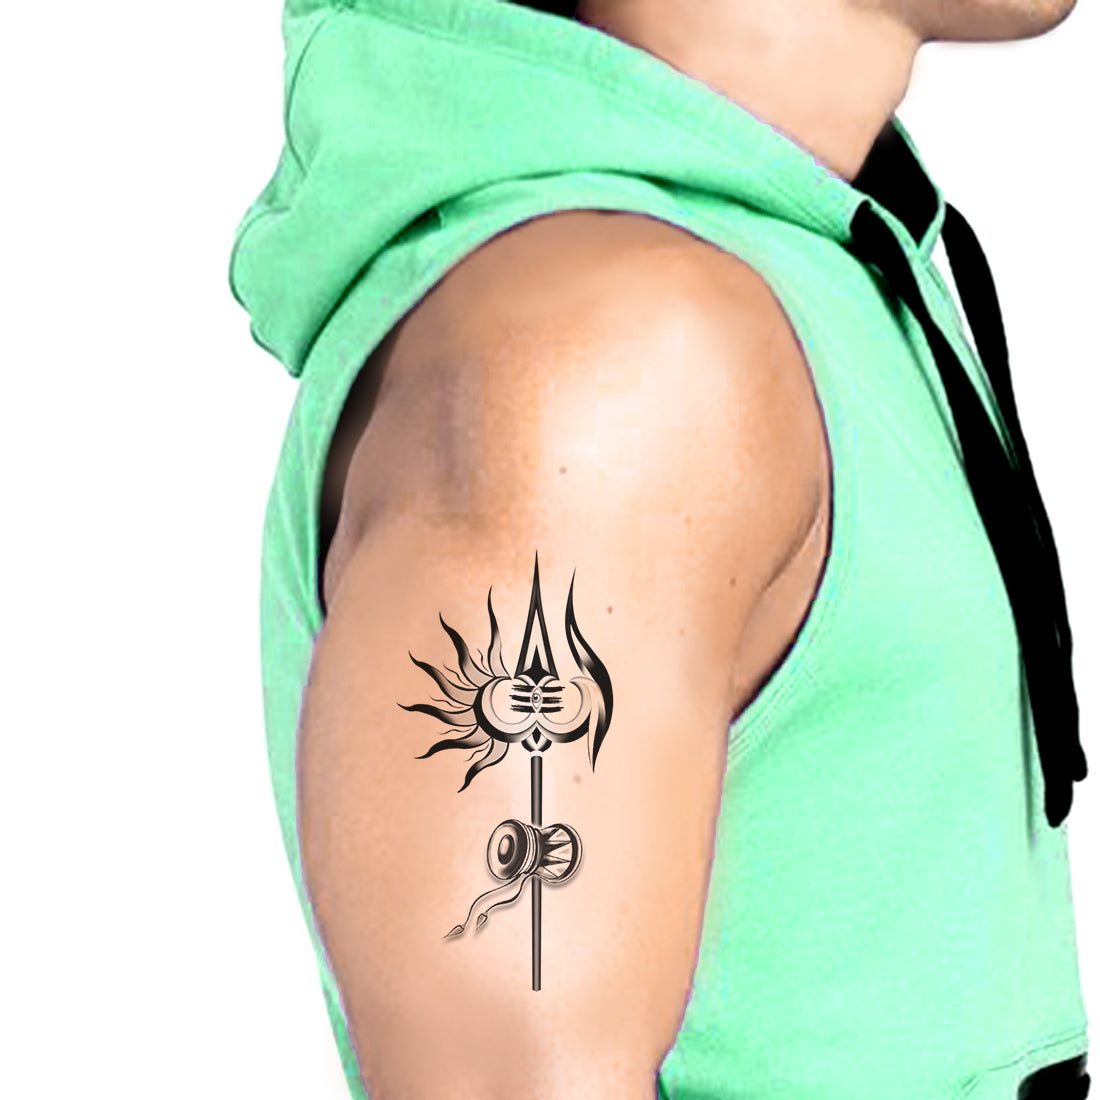 Shiv Tattoos